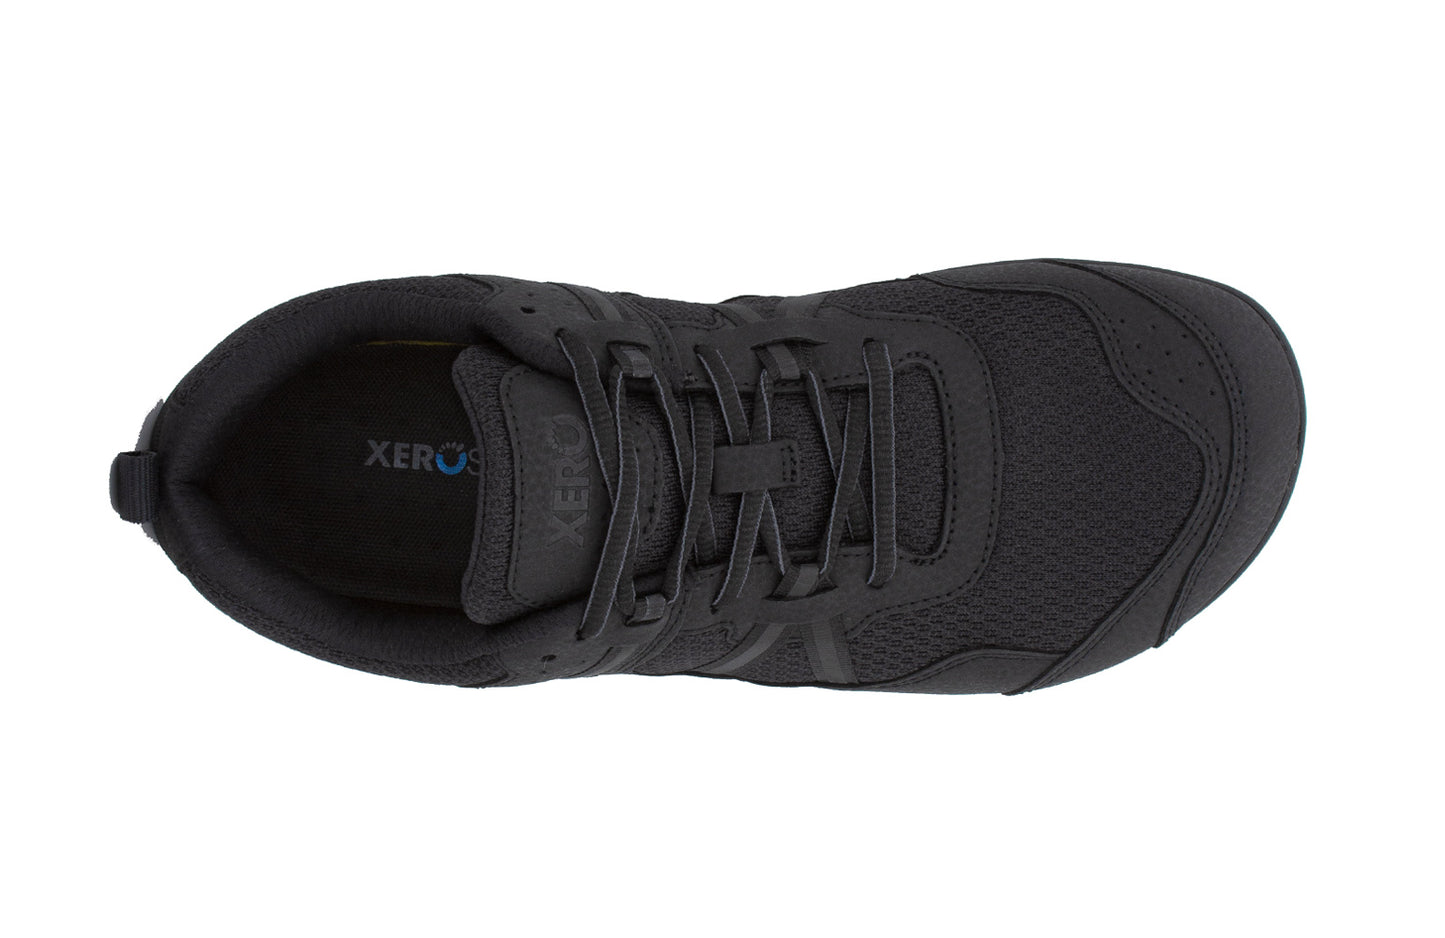 Xero Shoes Prio Black